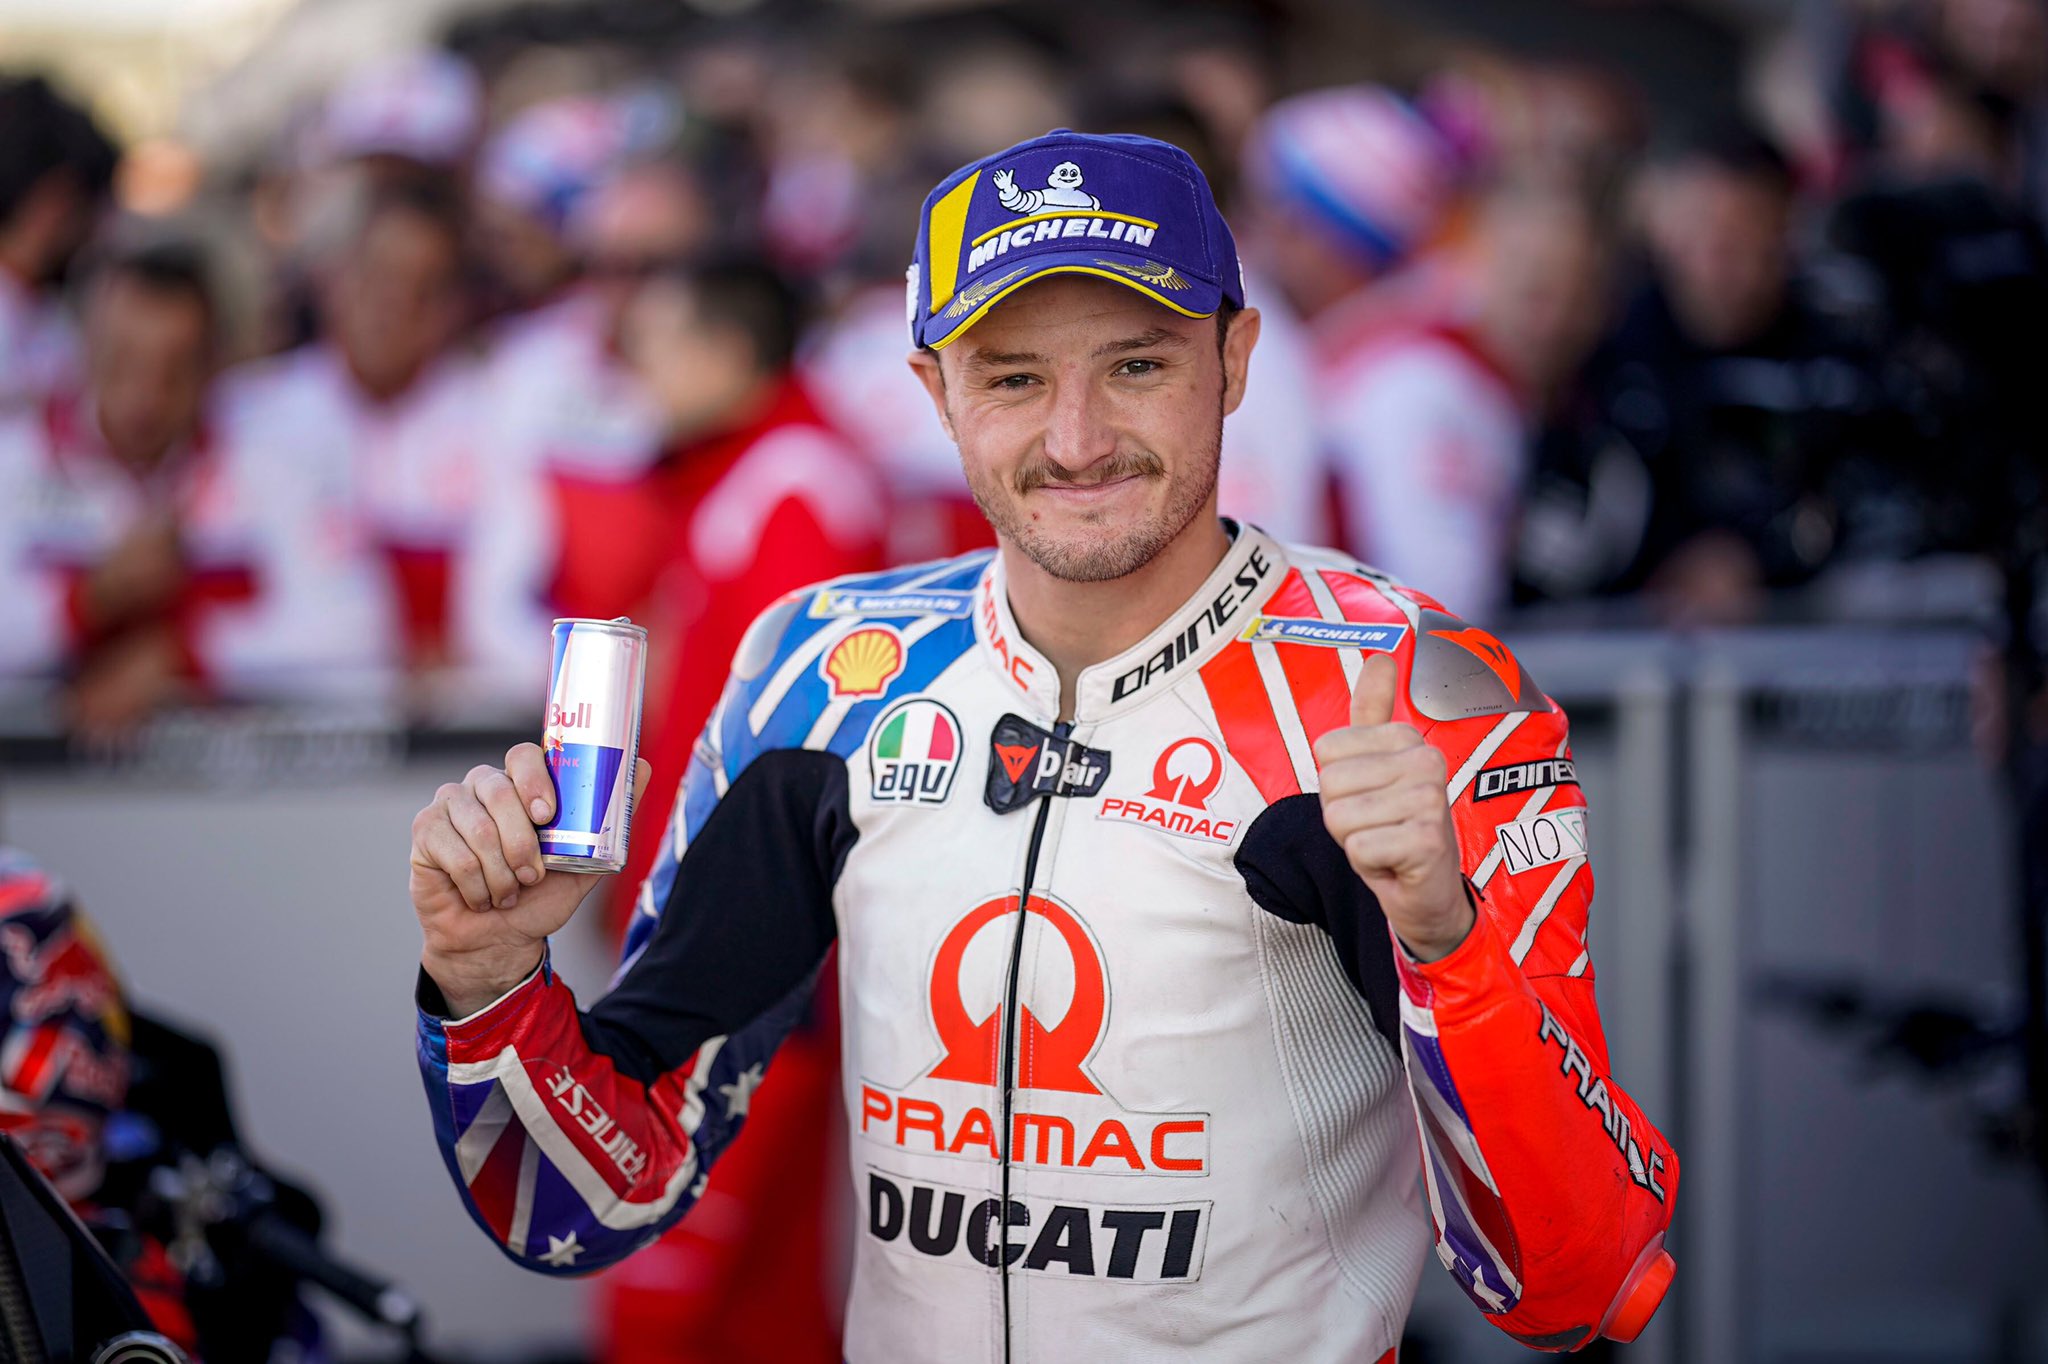 Resmi: Jack Miller Gabung Tim Pabrikan Ducati untuk MotoGP 2021